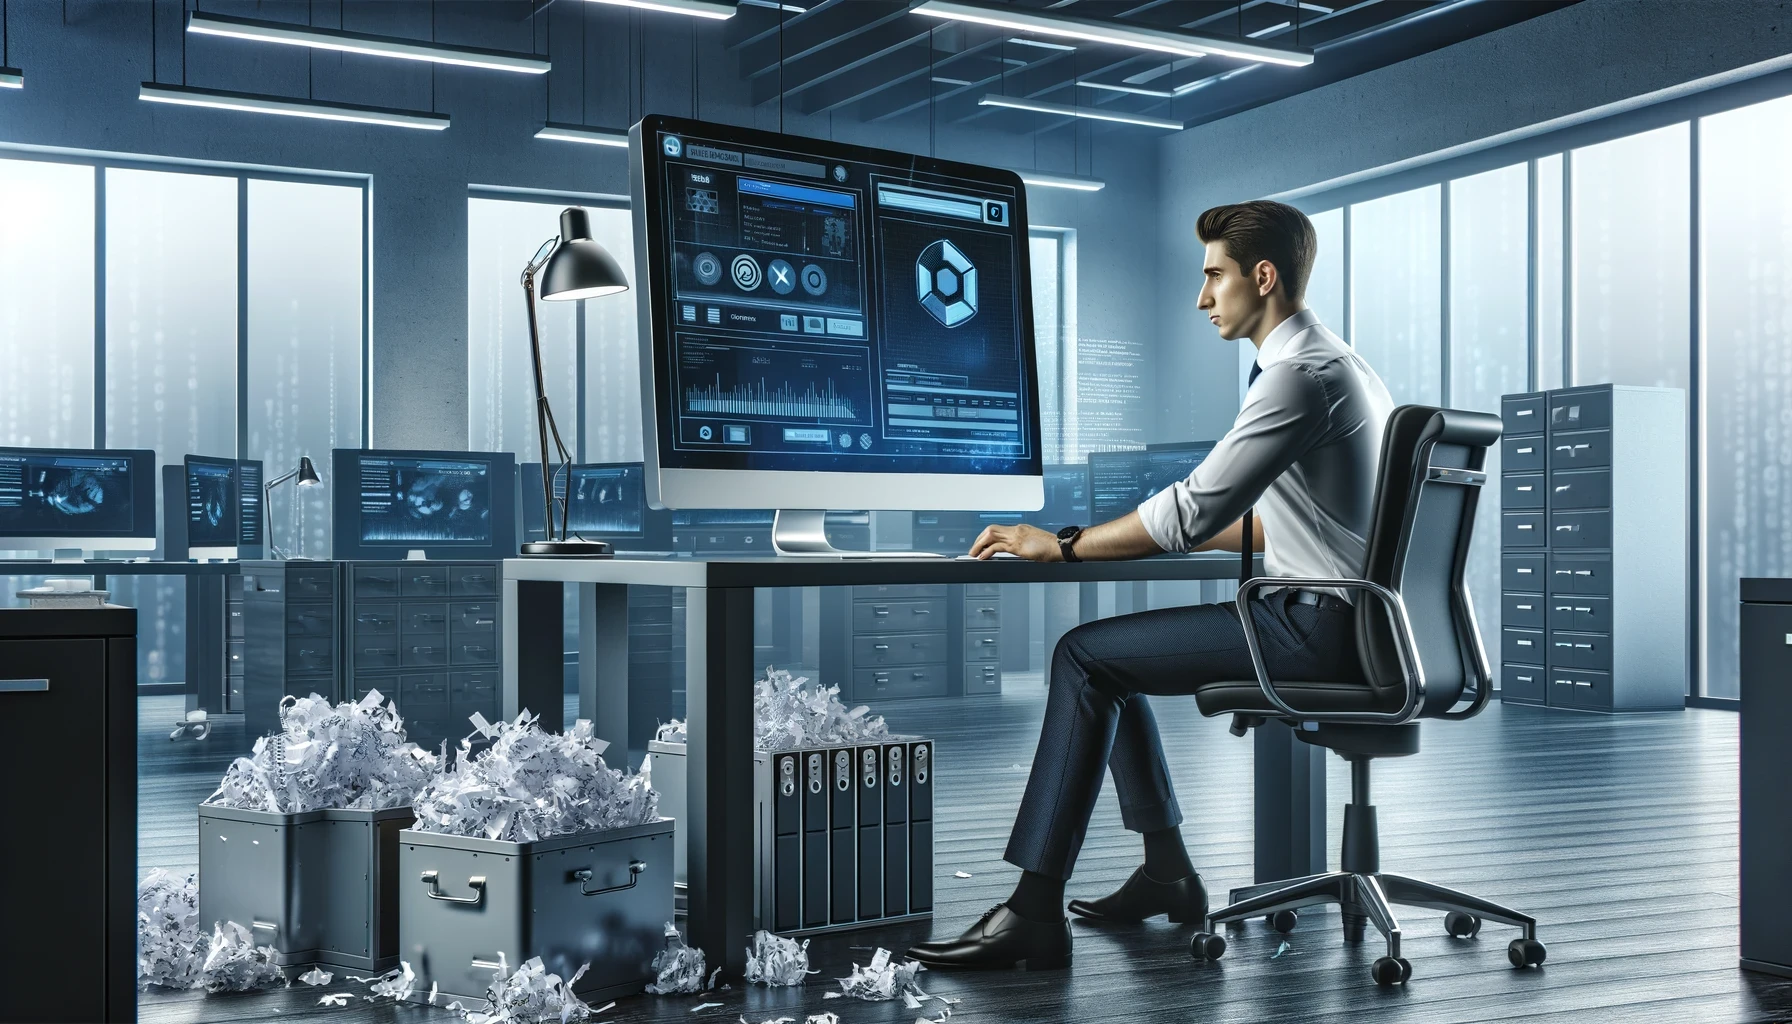 Mann arbeitet an einem modernen Arbeitsplatz mit mehreren Bildschirmen, die Sicherheits- und Überwachungsdaten anzeigen, umgeben von zerkleinerten Papierhaufen, symbolisch für Datensicherheit und Vernichtung.